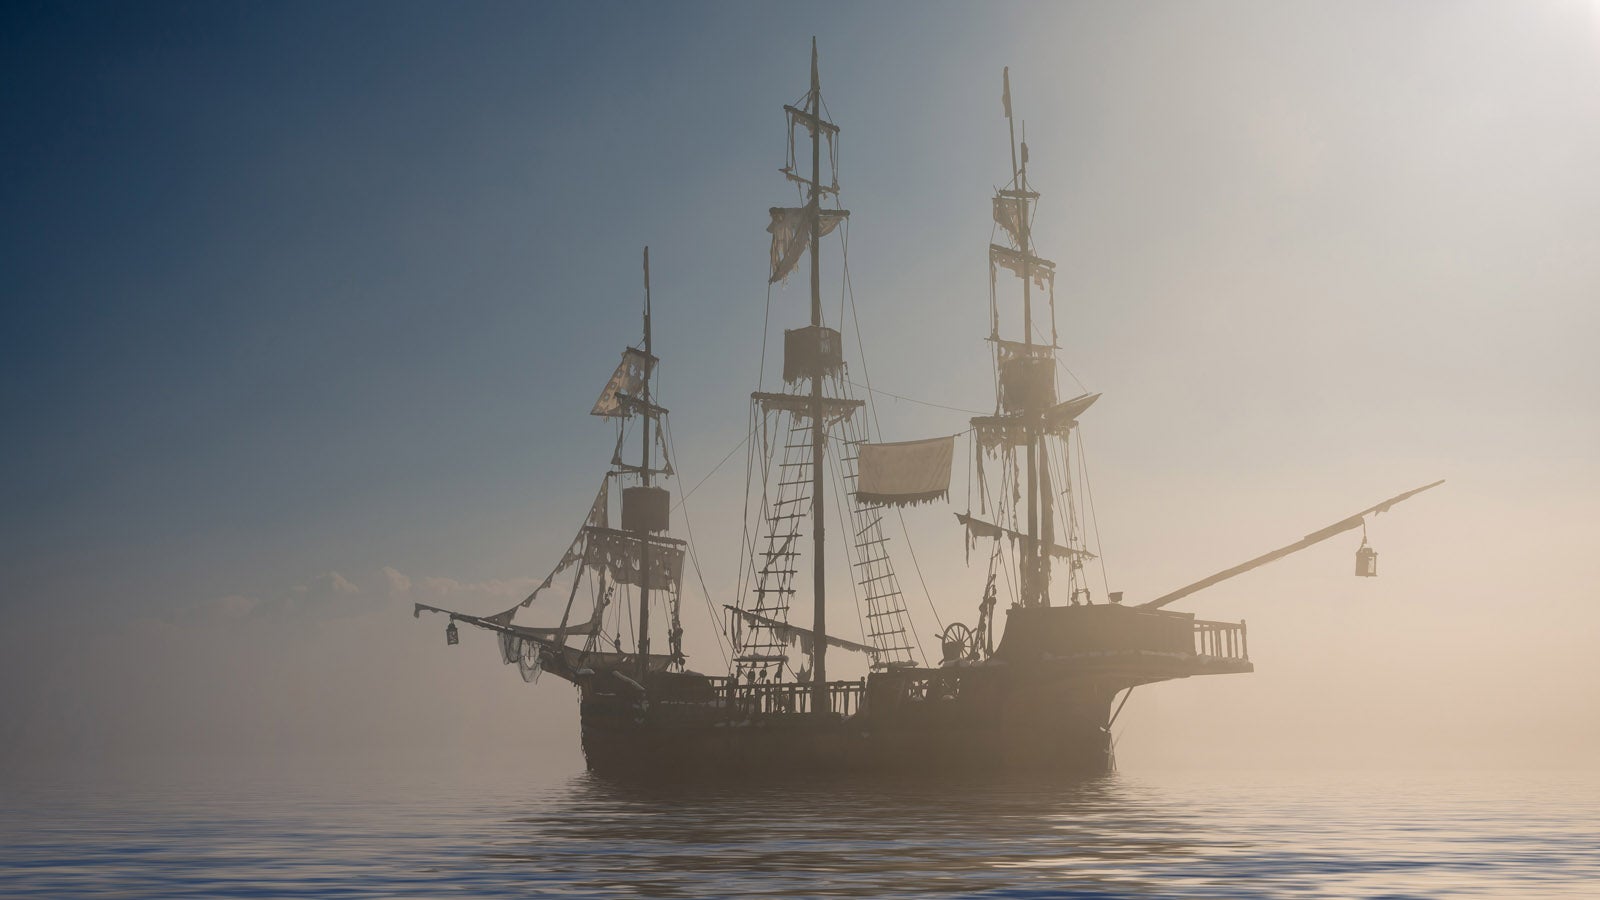 Pirate ship on a misty sea